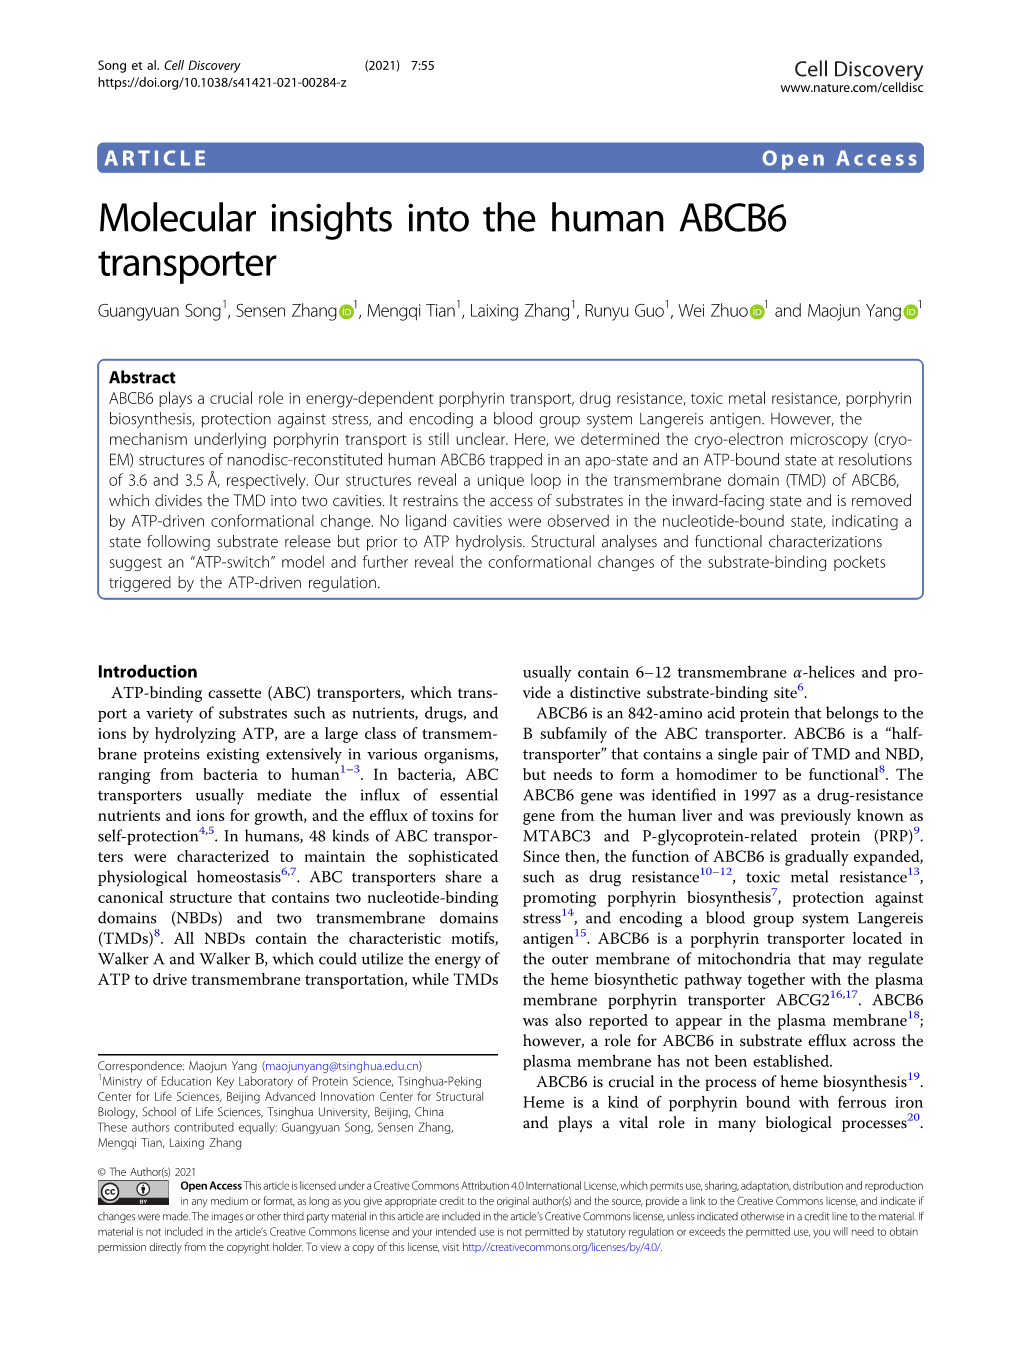 Molecular Insights Into the Human ABCB6 Transporter Guangyuan Song1, Sensen Zhang 1,Mengqitian1, Laixing Zhang1,Runyuguo1, Wei Zhuo 1 and Maojun Yang 1